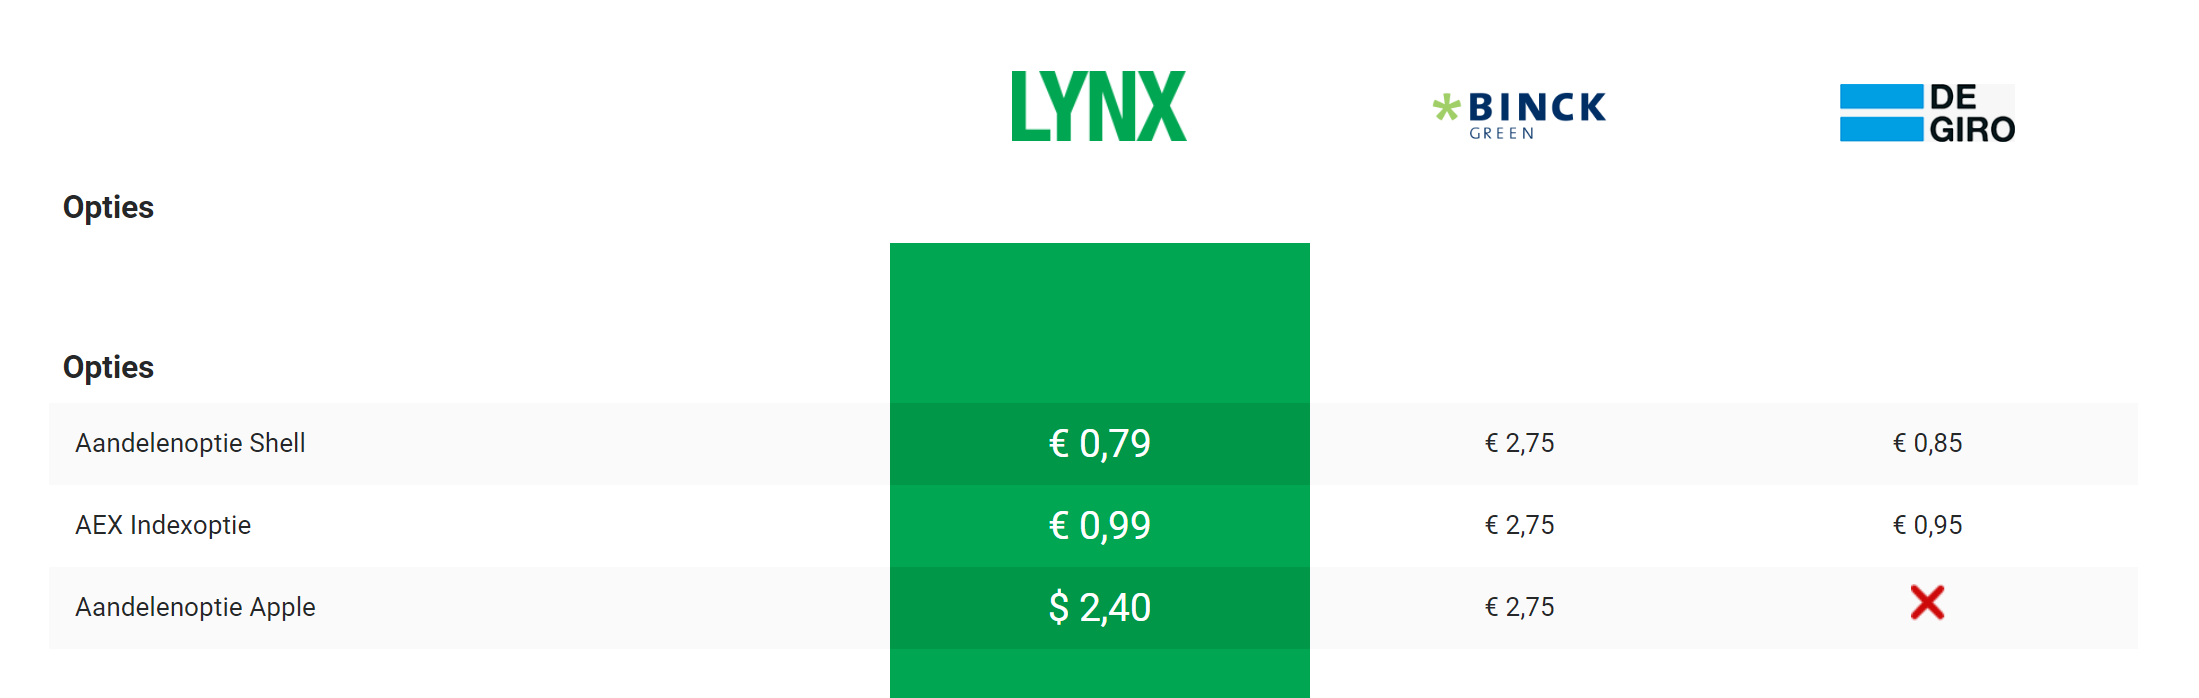 Kosten aandelenopties bij LYNX